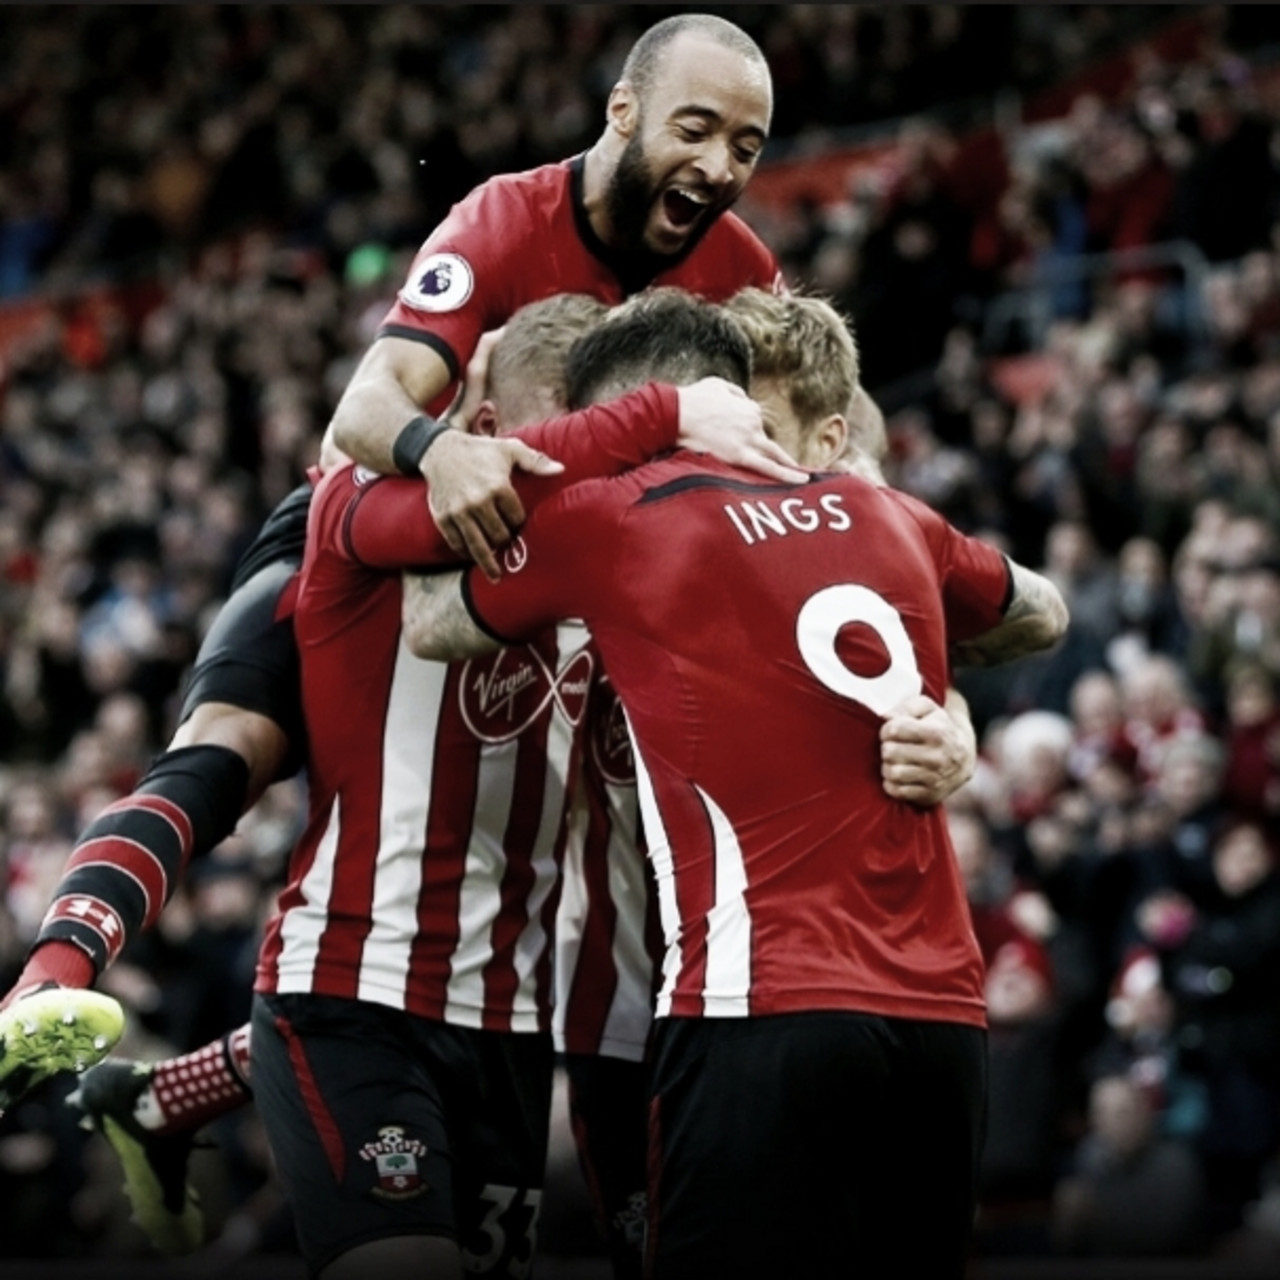 Southampton vence Arsenal e alcança primeira vitória no Campeonato Inglês